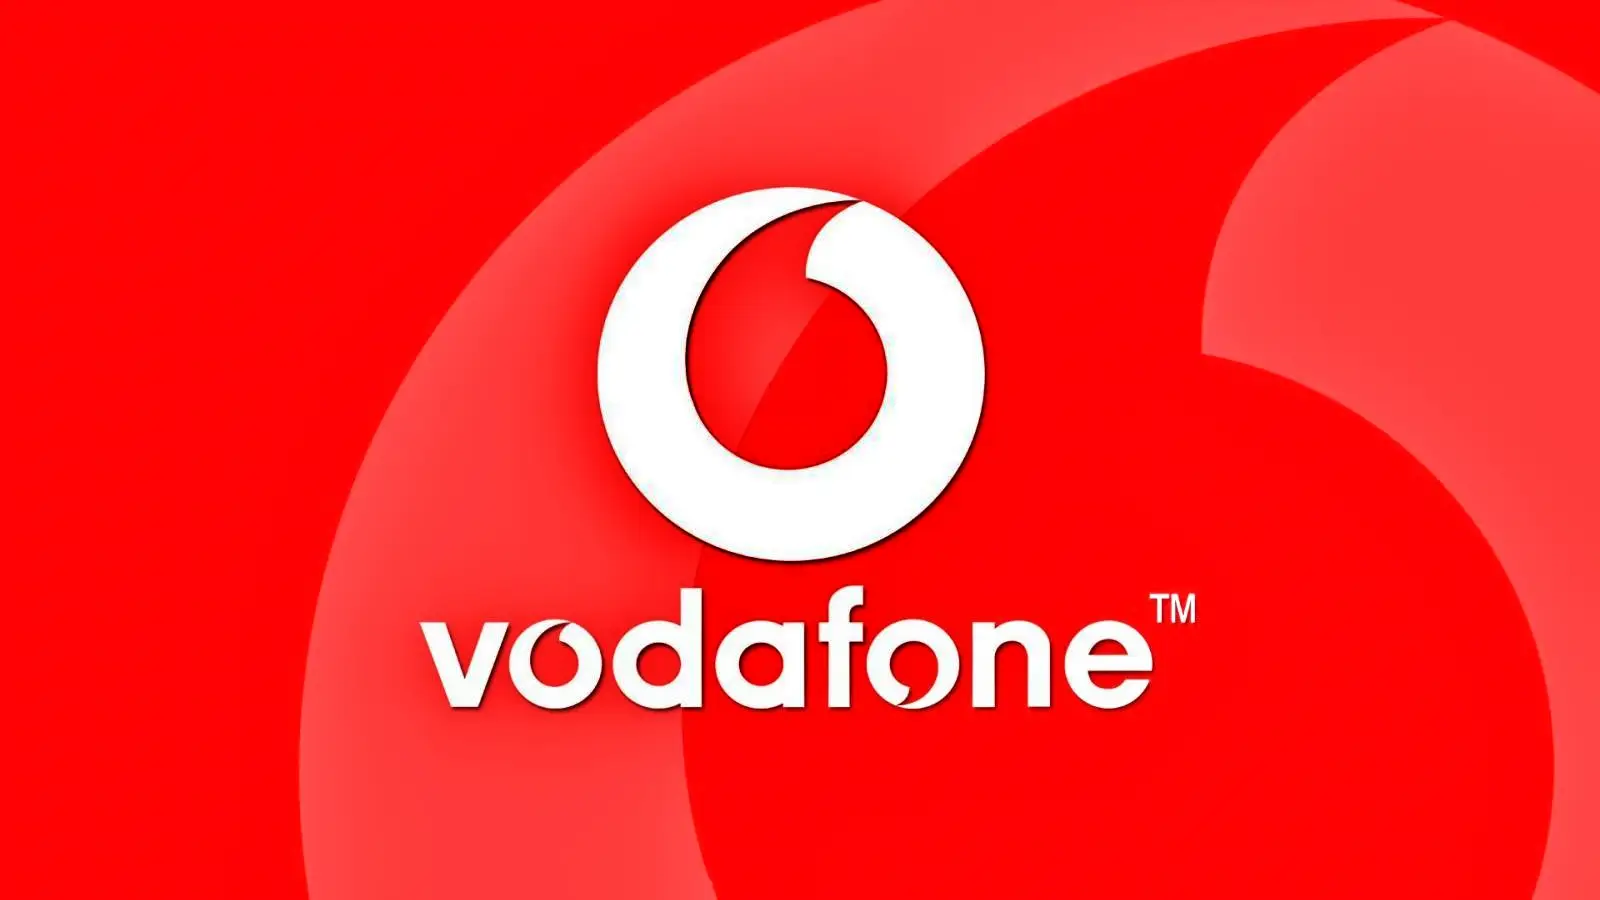 Vodafone Revolut regala 100 LEI GRATIS Devi farlo